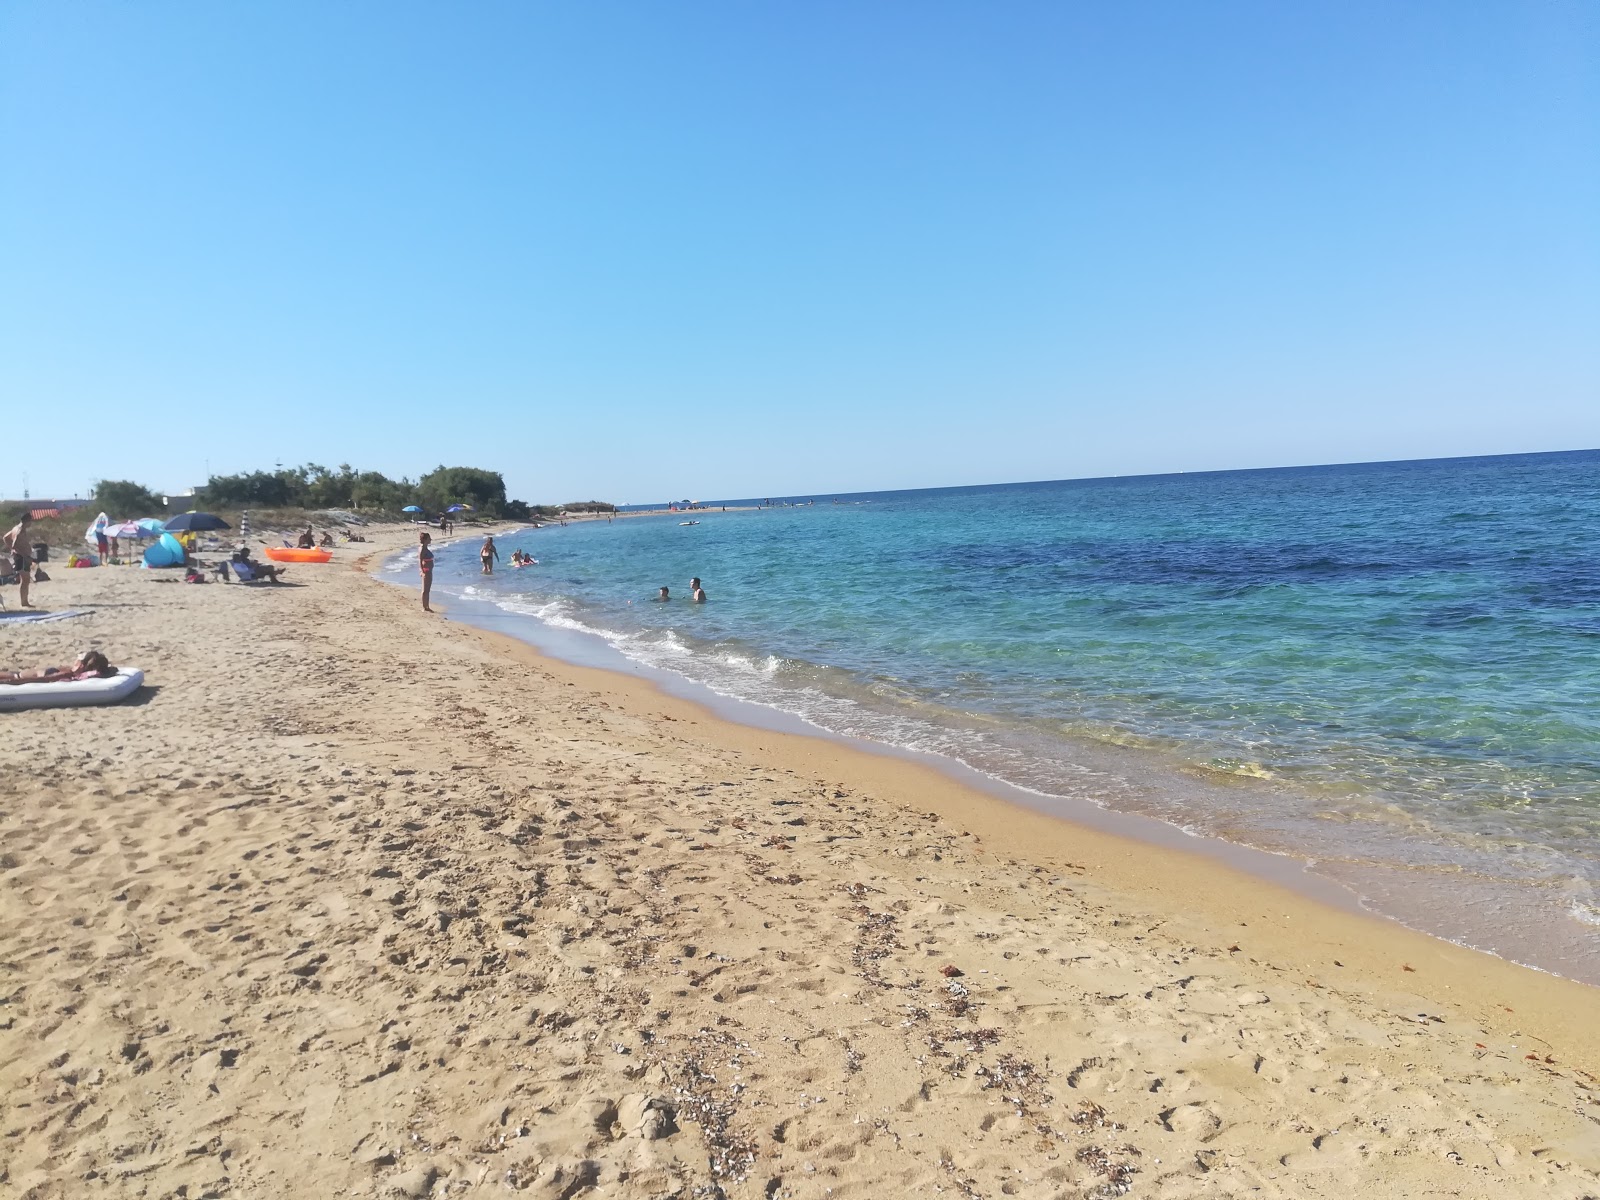 Foto de Chianca beach con parcialmente limpio nivel de limpieza